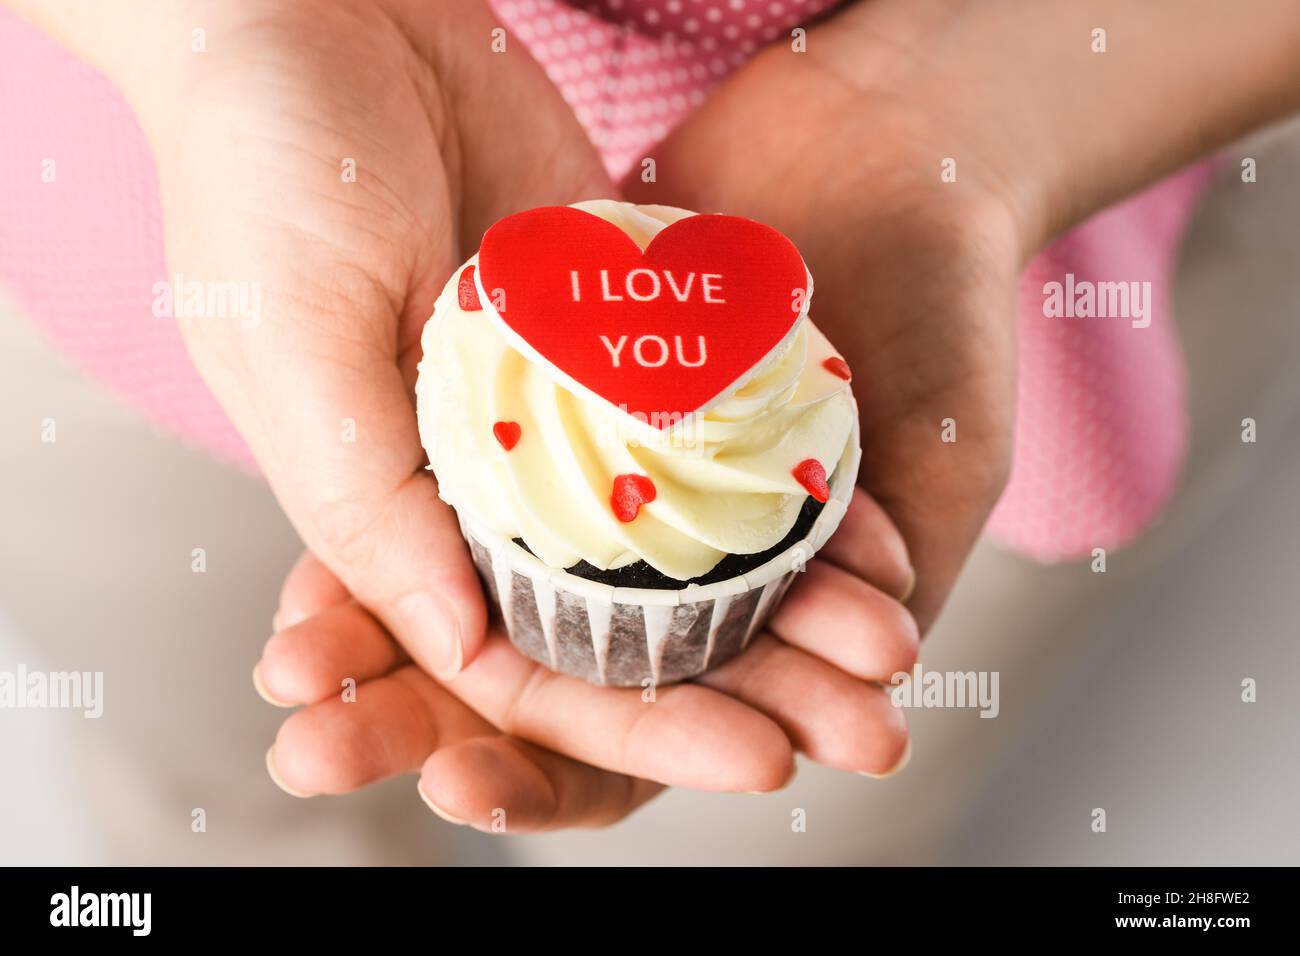 Fille tenant un gâteau en forme de coeur avec l'inscription Je t'aime.Cupcake en forme de coeur, gros plan Banque D'Images